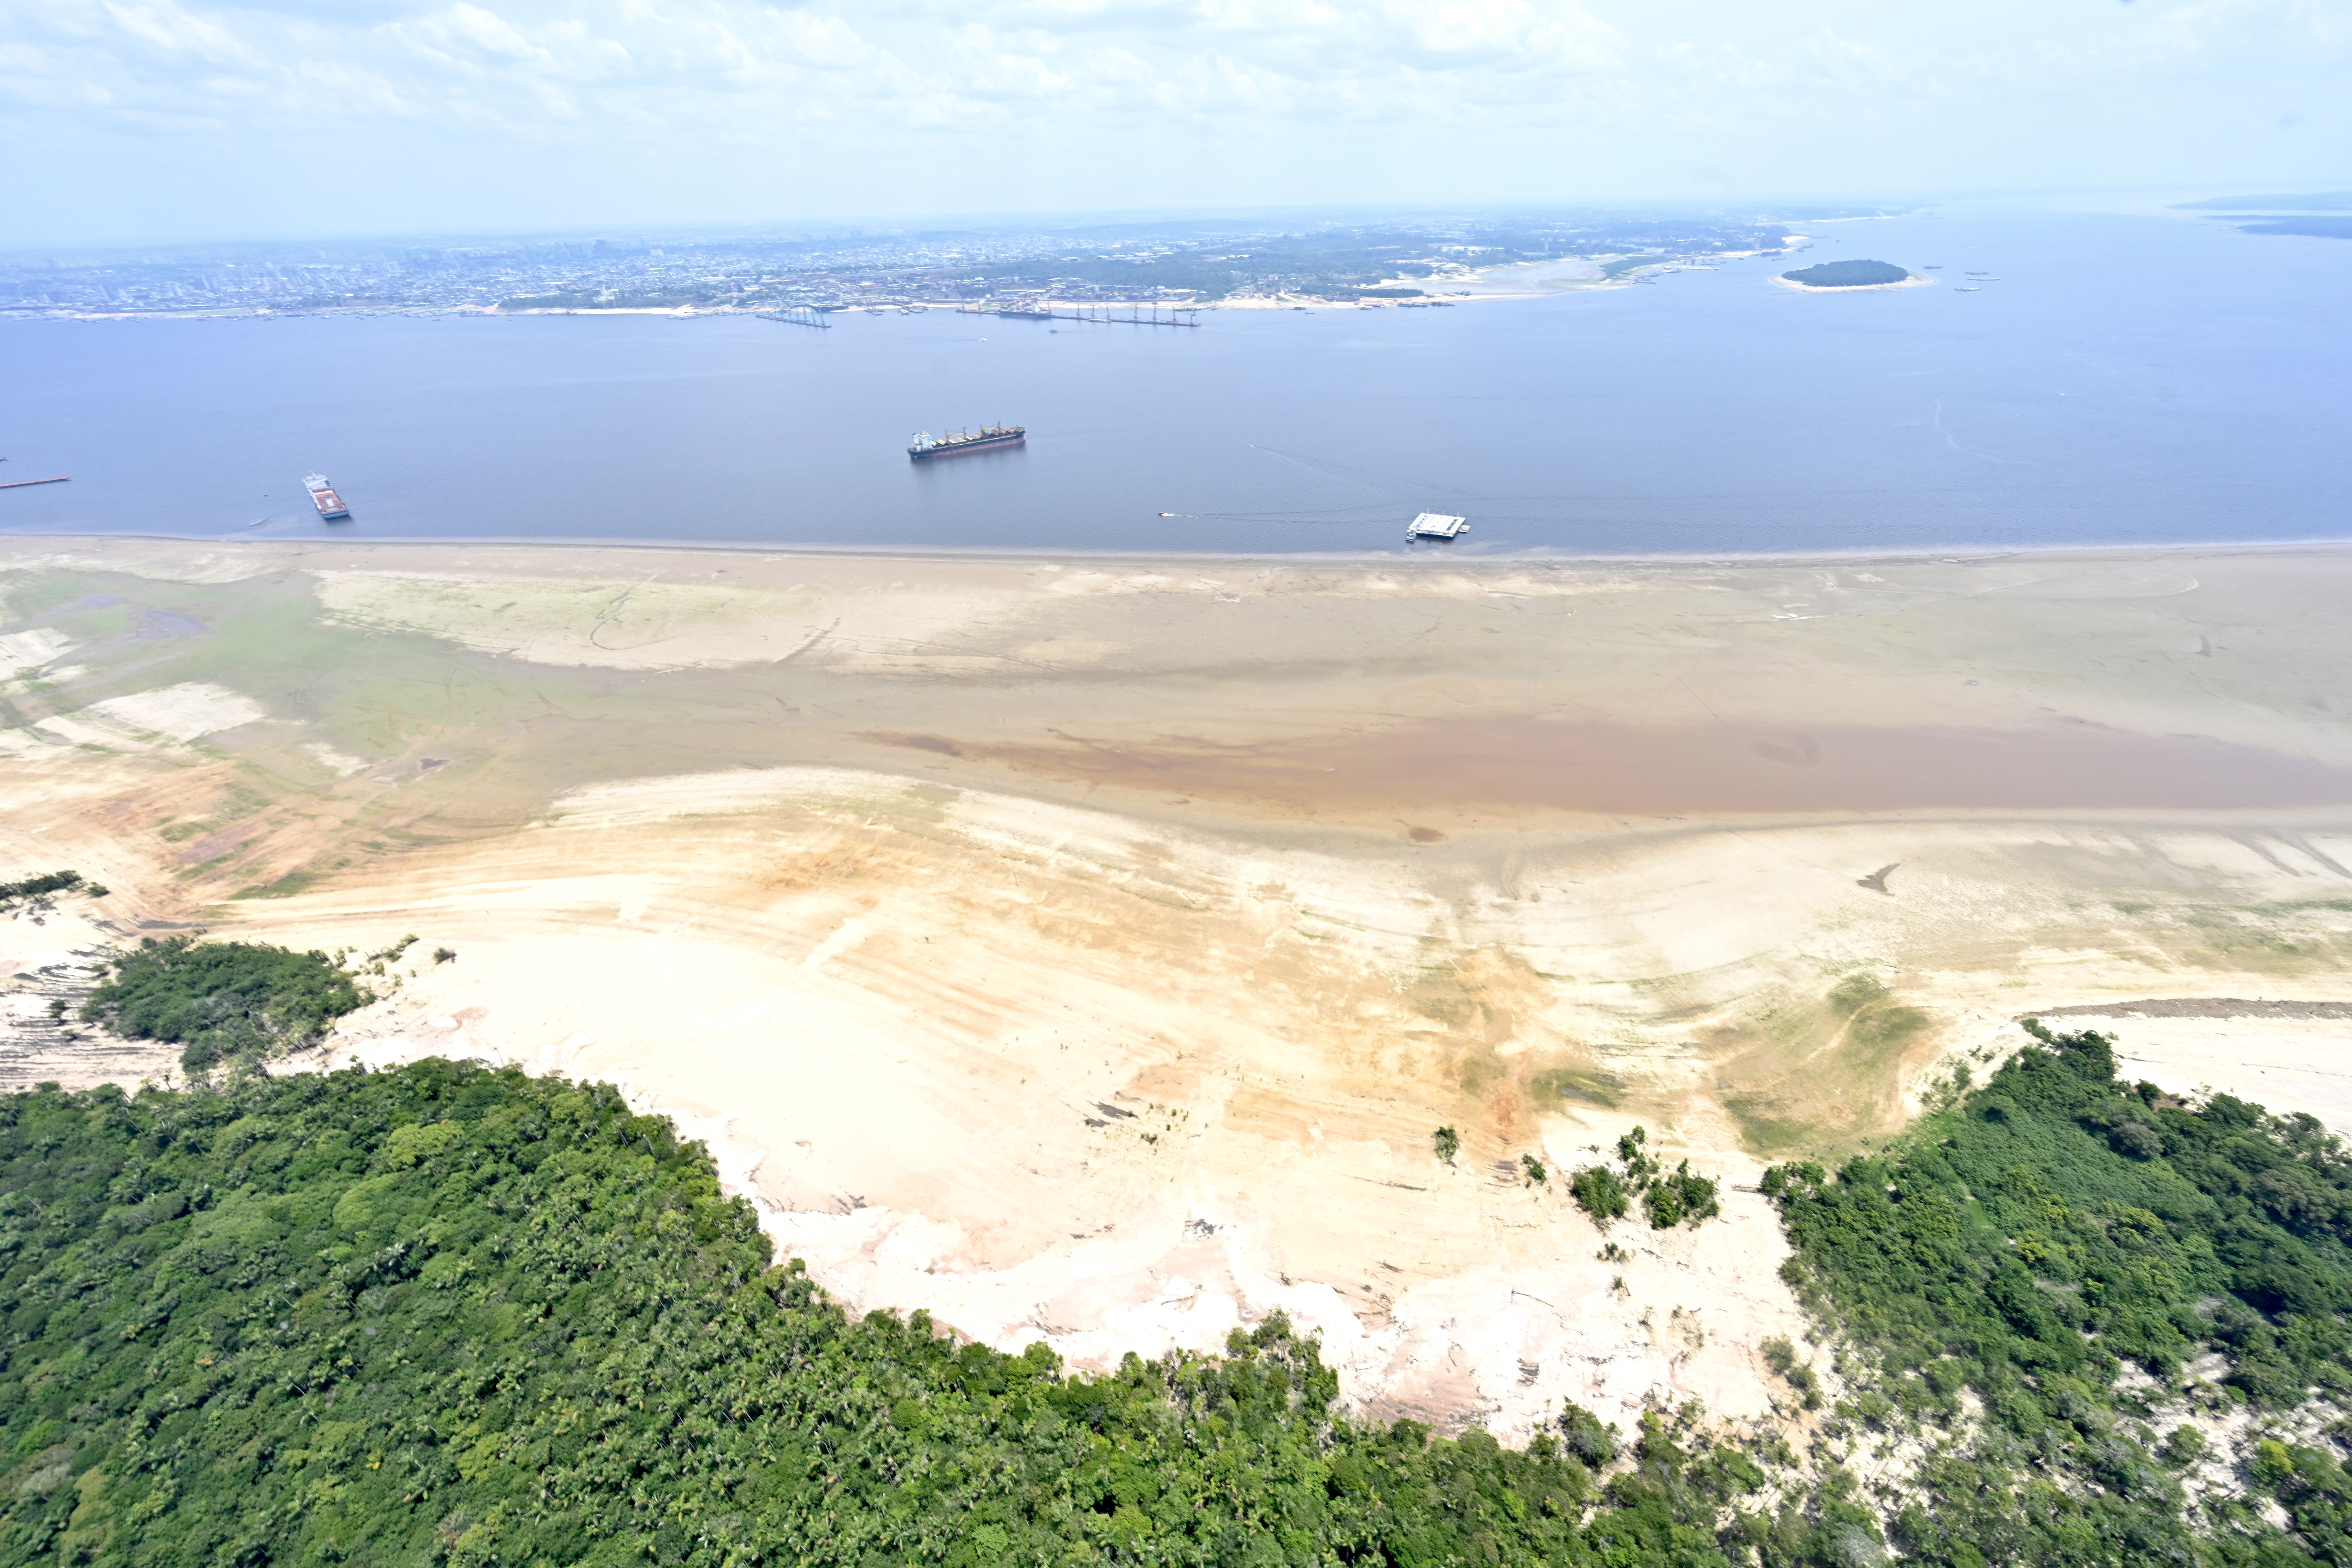 'O rio deve descer ainda mais', afirma Renato Senna, climatologista e pesquisador do Inpa. 'Pelos dados históricos, as grandes secas se prolongaram pelo fim de outubro e início de novembro.'